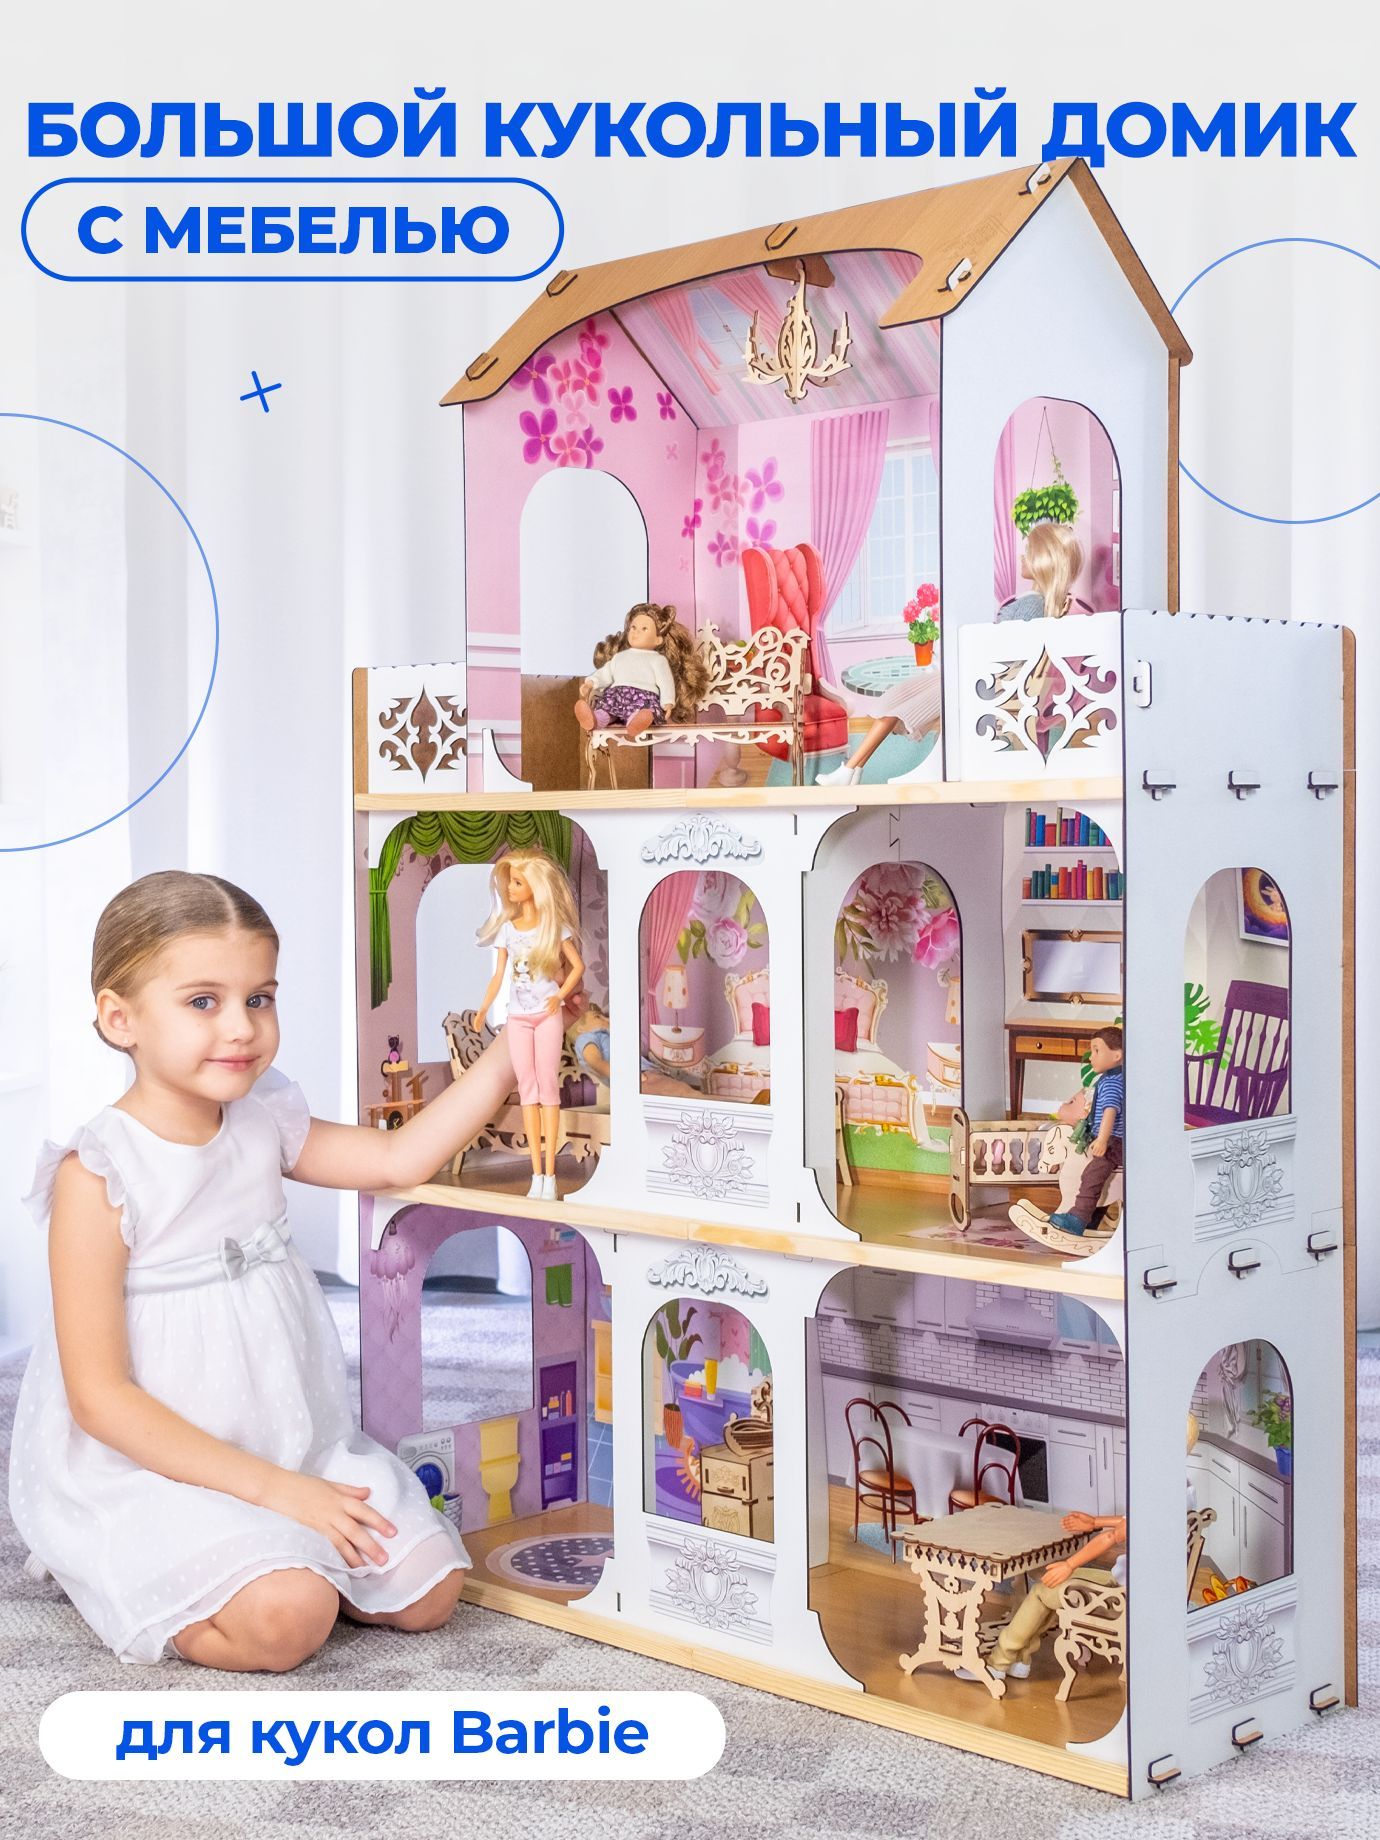 Игра Строить дома для Барби - играть онлайн бесплатно